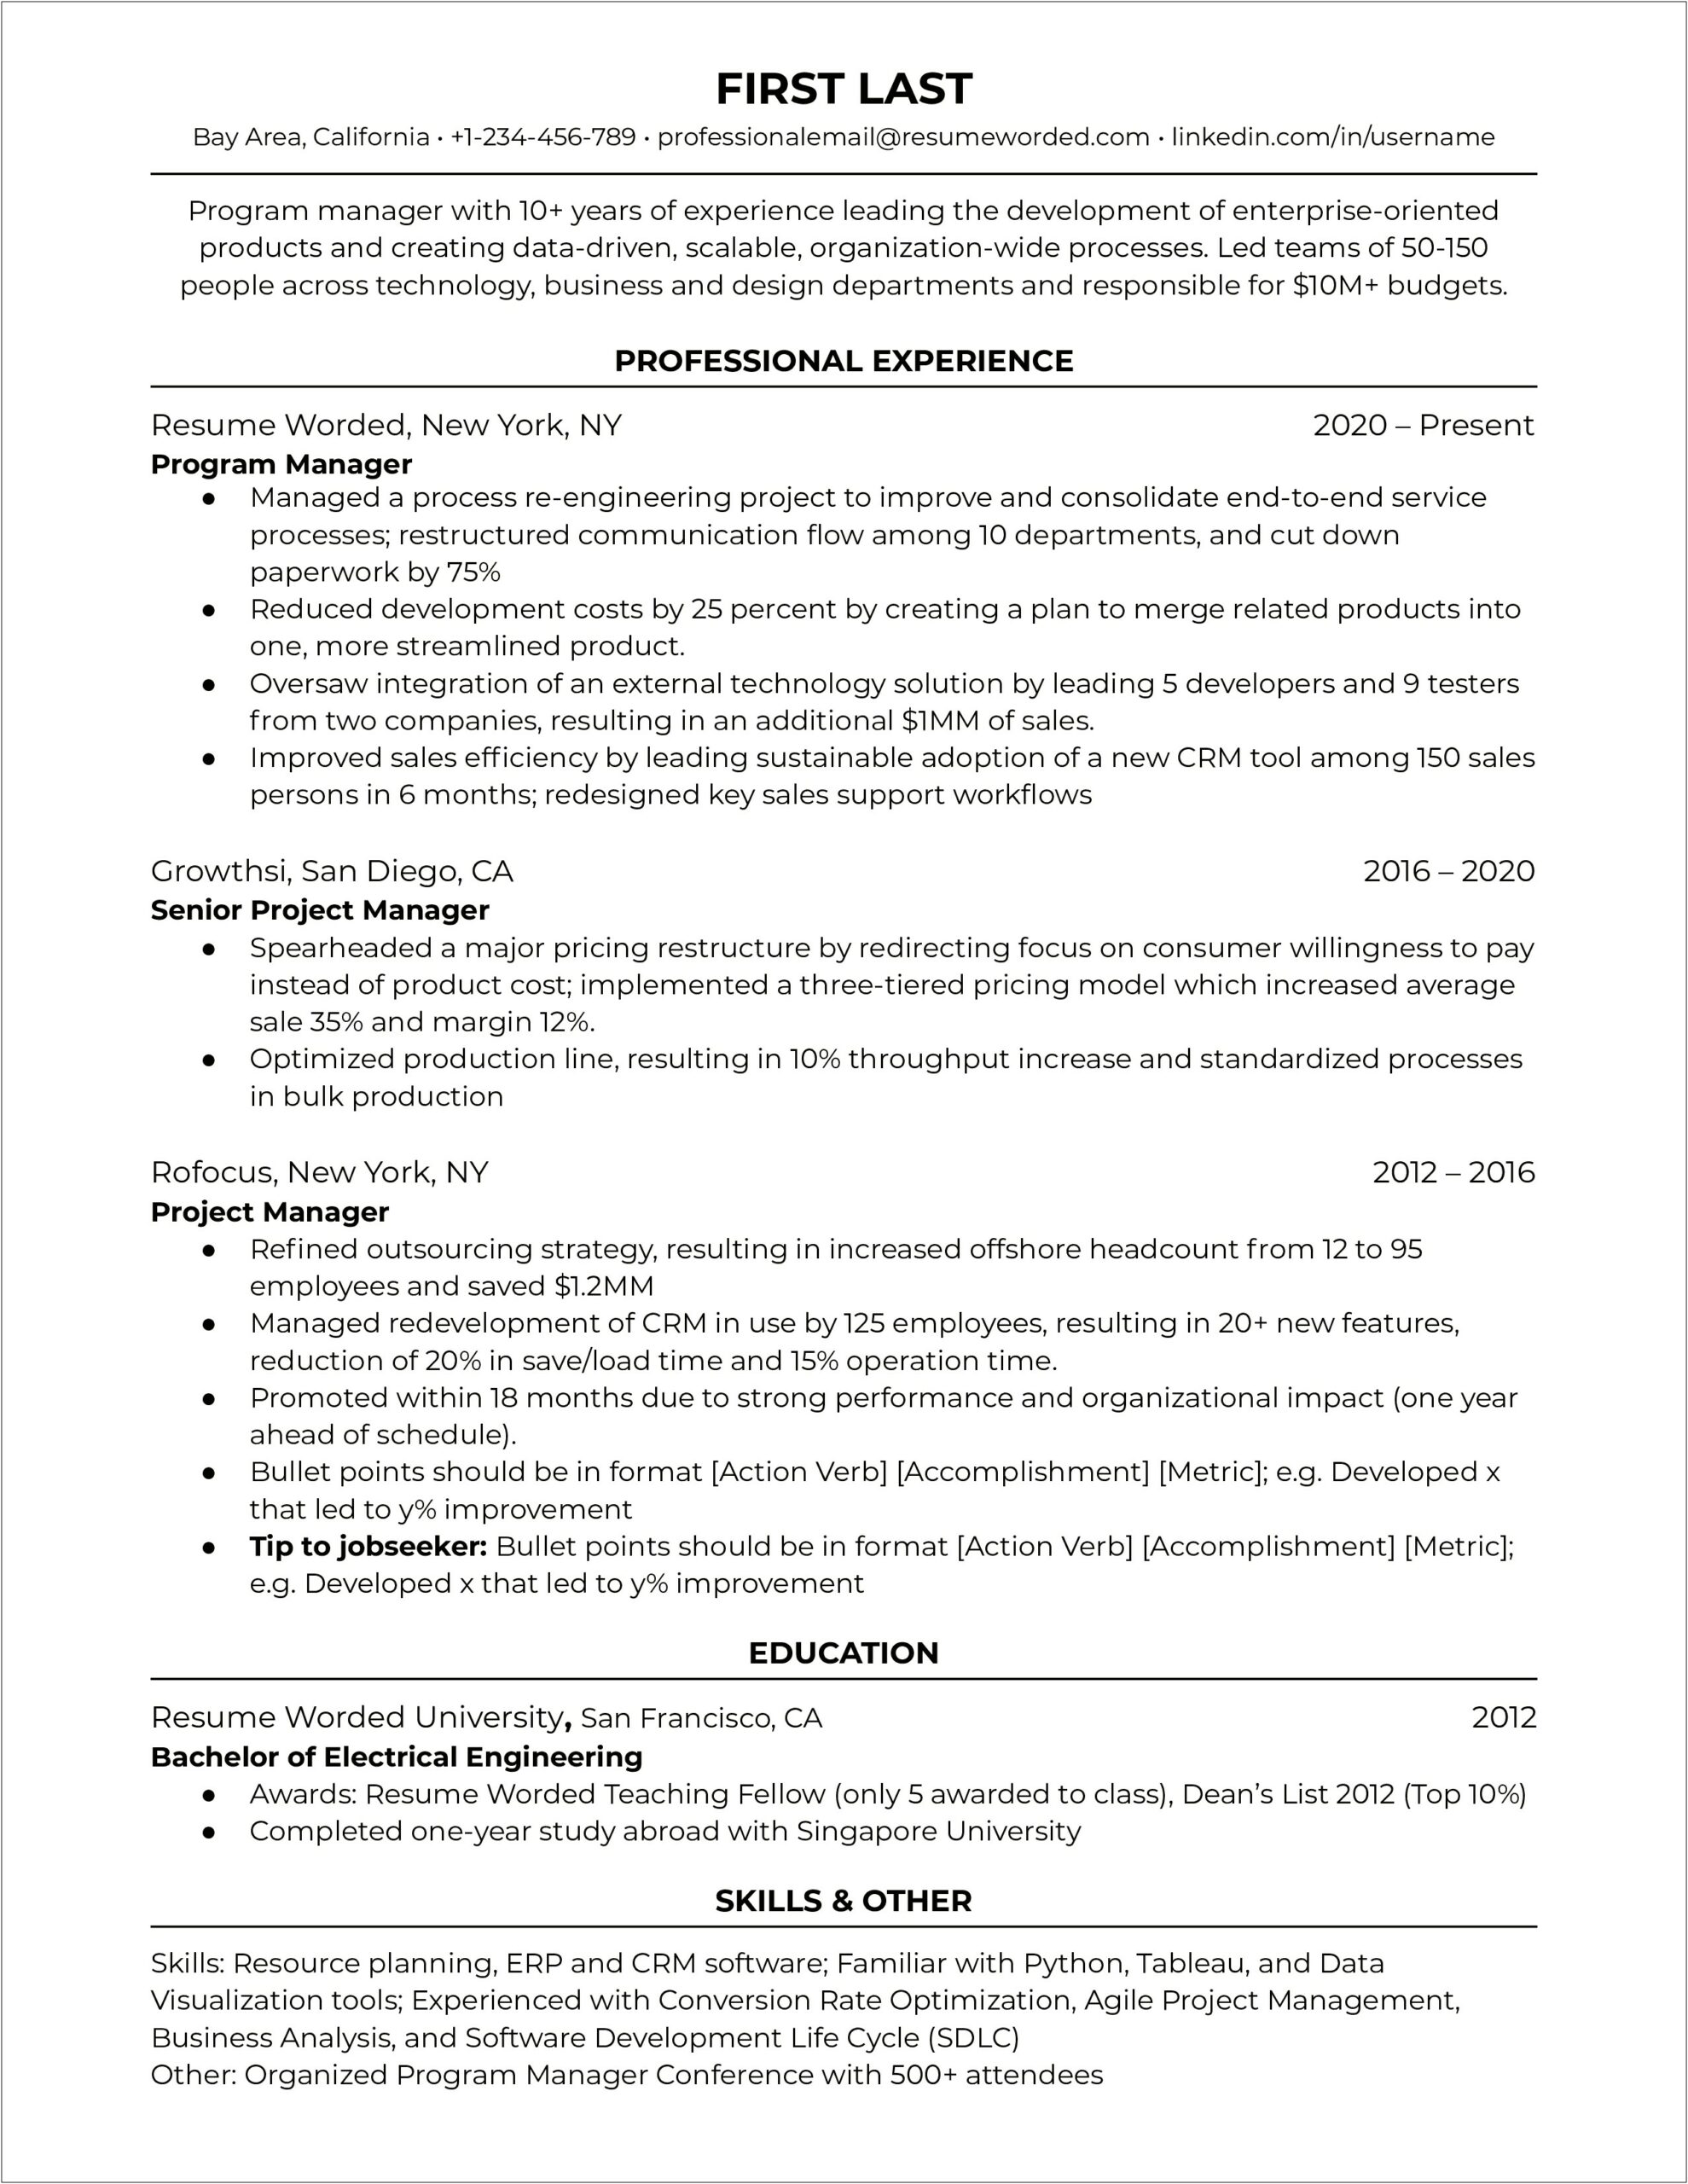 Sample Resume In Applying A Job In California